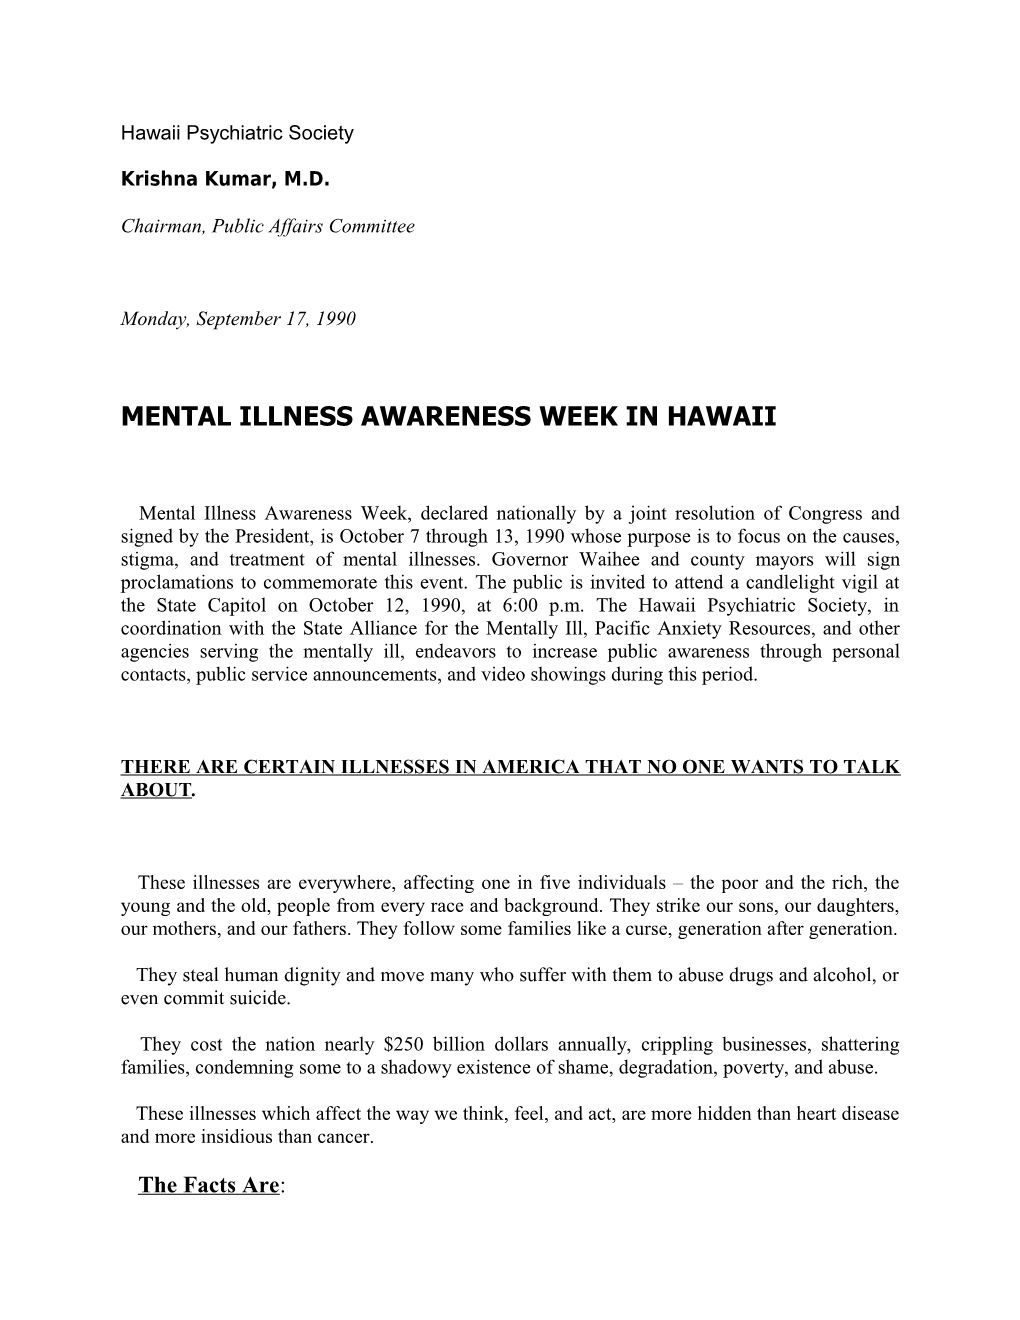 Mental Illness Awareness Week in Hawaii